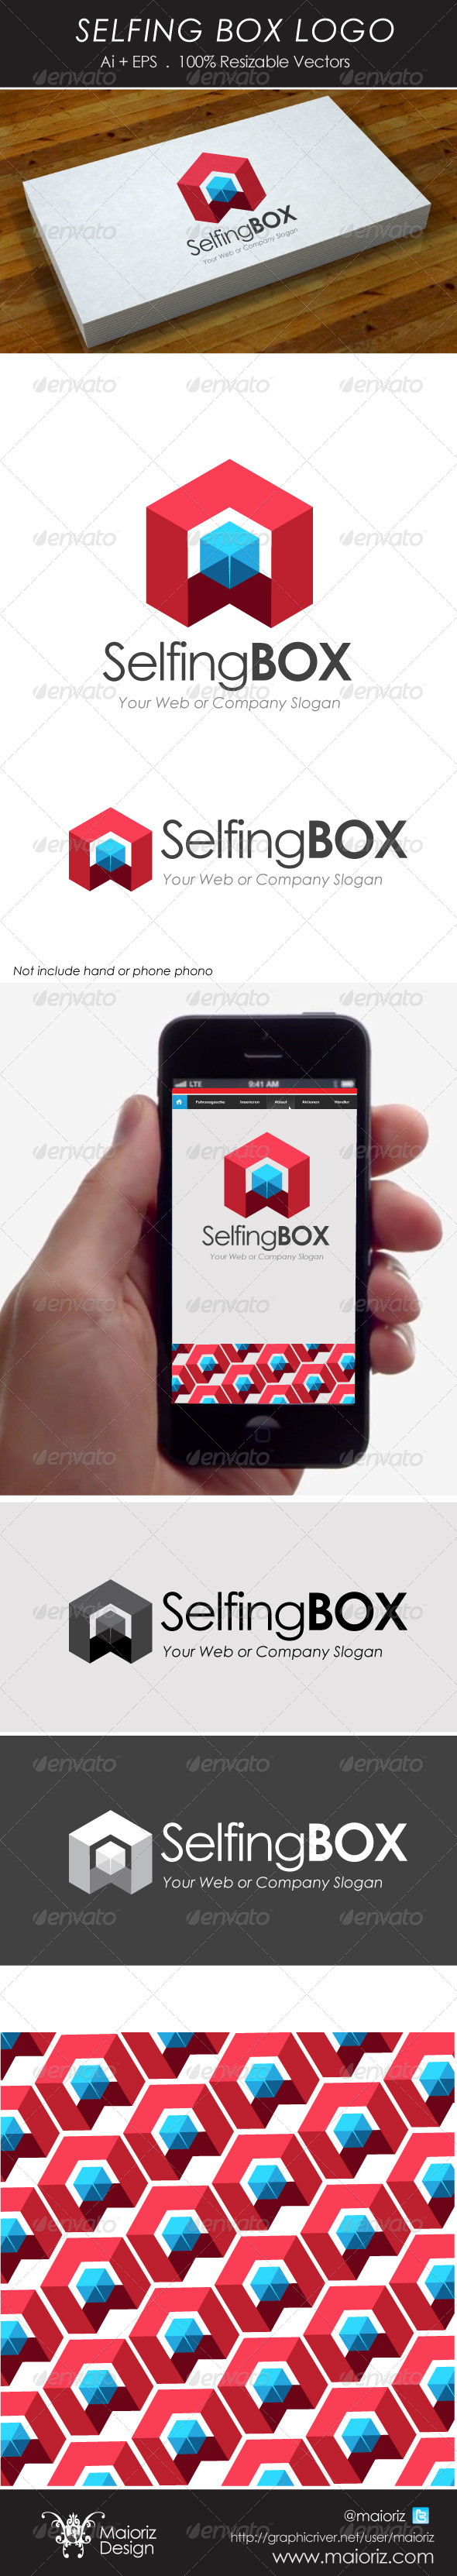 Selfing Box Logo